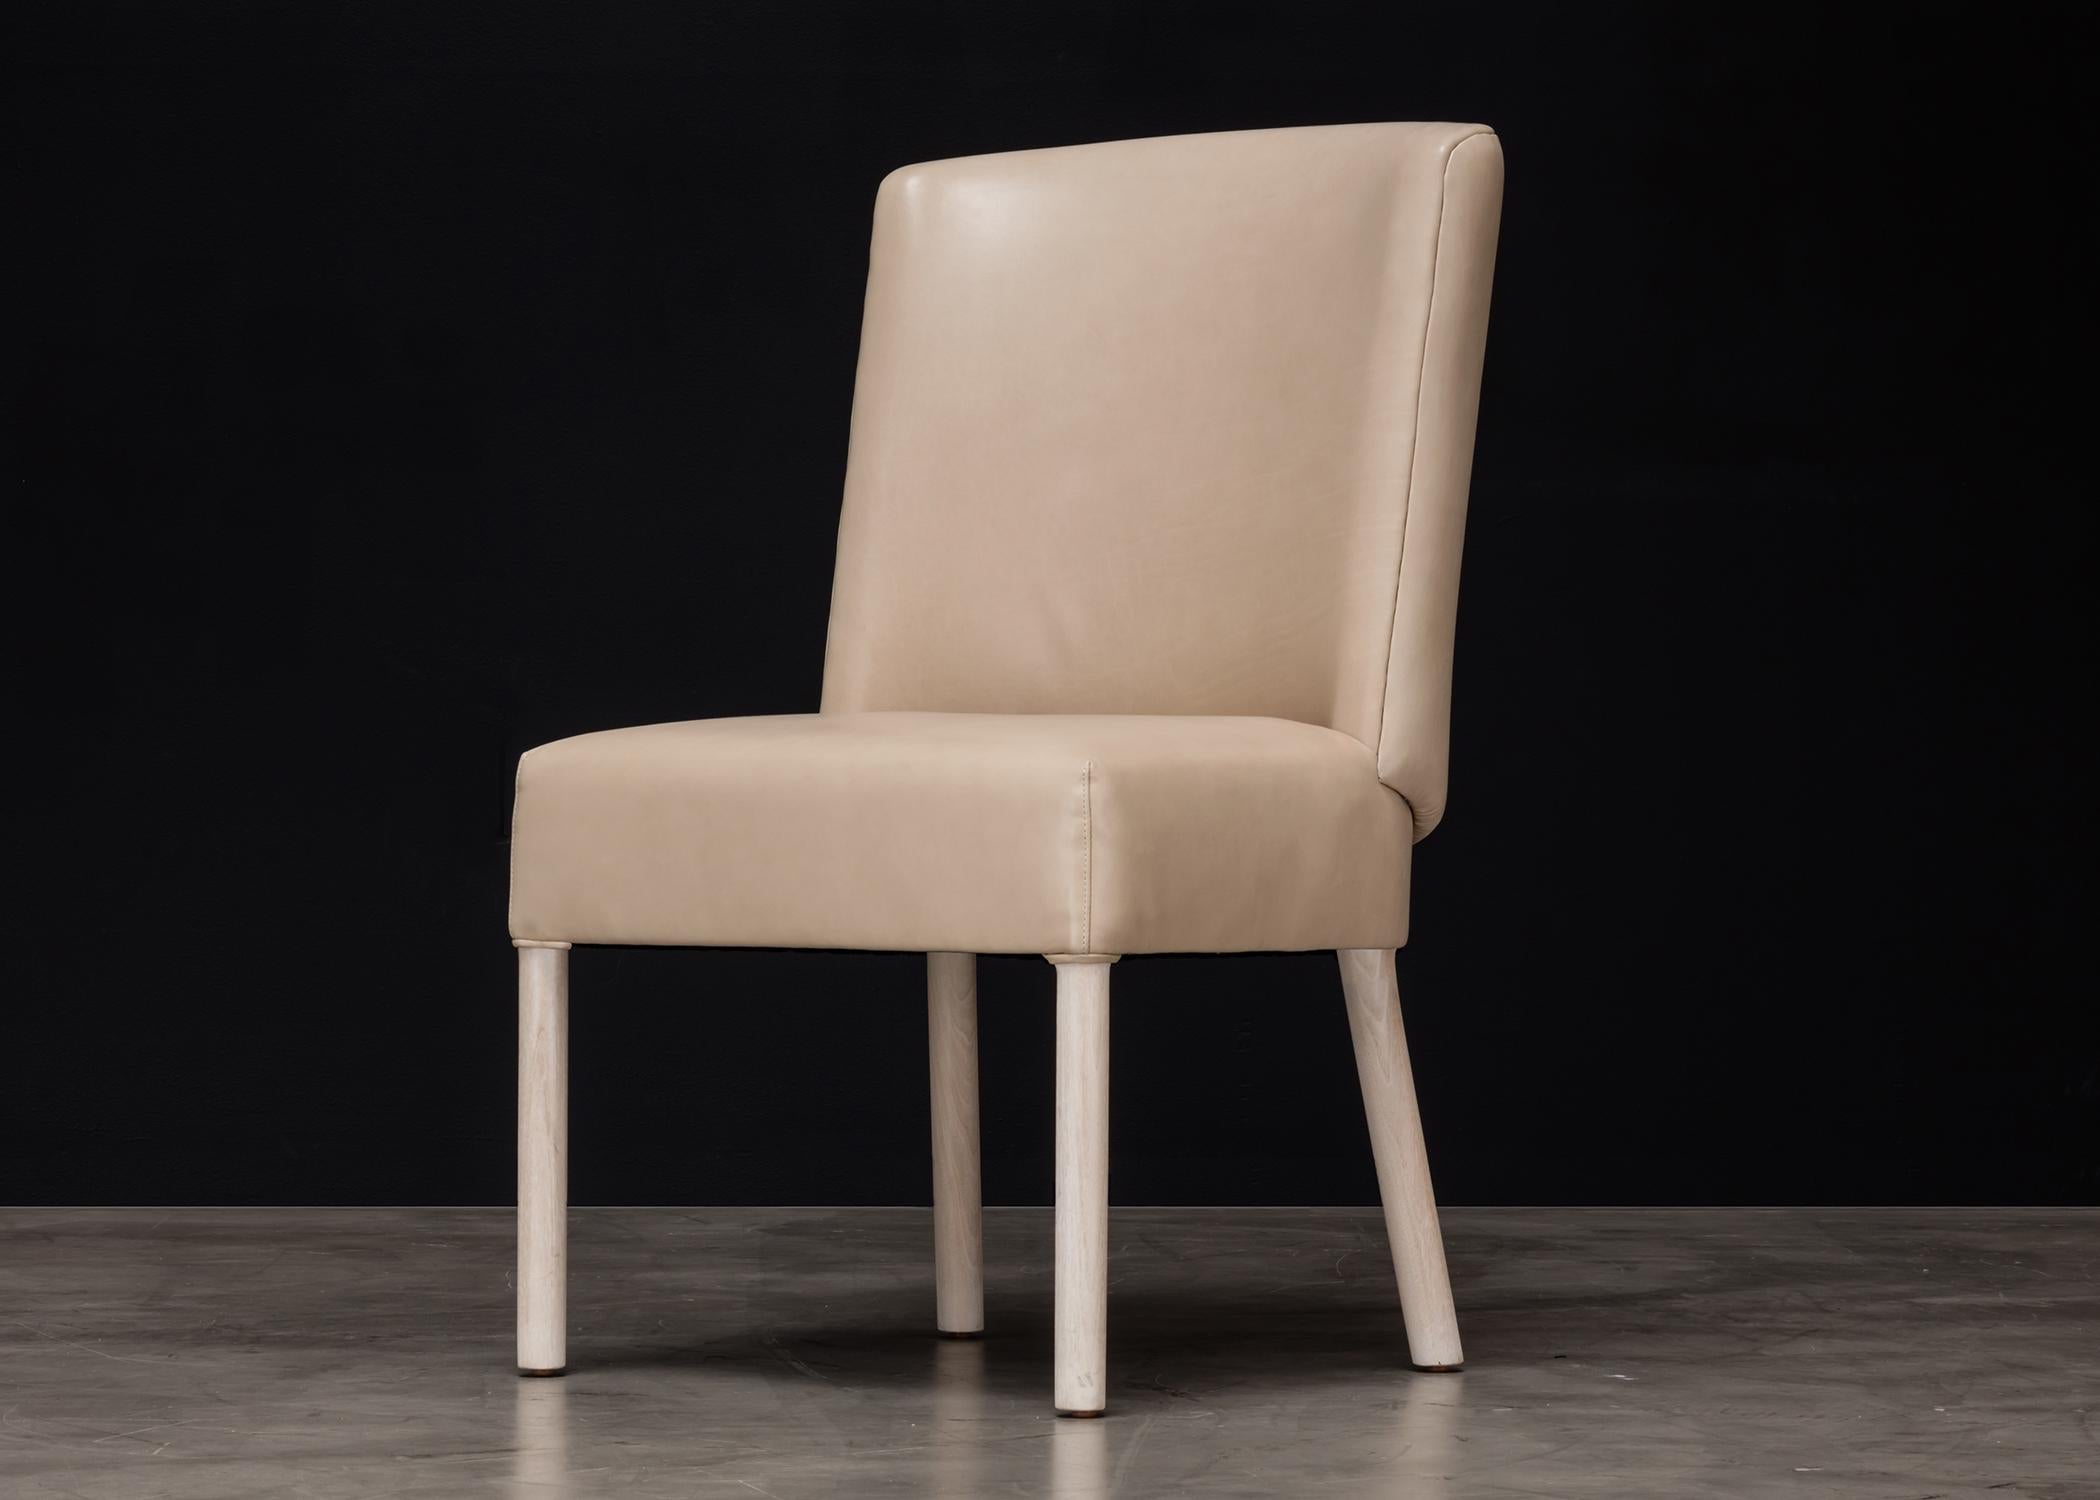 Der Curve Dining Chair ist ein stilvolles und bequemes Möbelstück, das mit einer modernen Ästhetik entworfen wurde. Die geschwungenen Linien verleihen jedem Esszimmer einen Hauch von Eleganz und Raffinesse. Dieser Stuhl ist nicht nur optisch